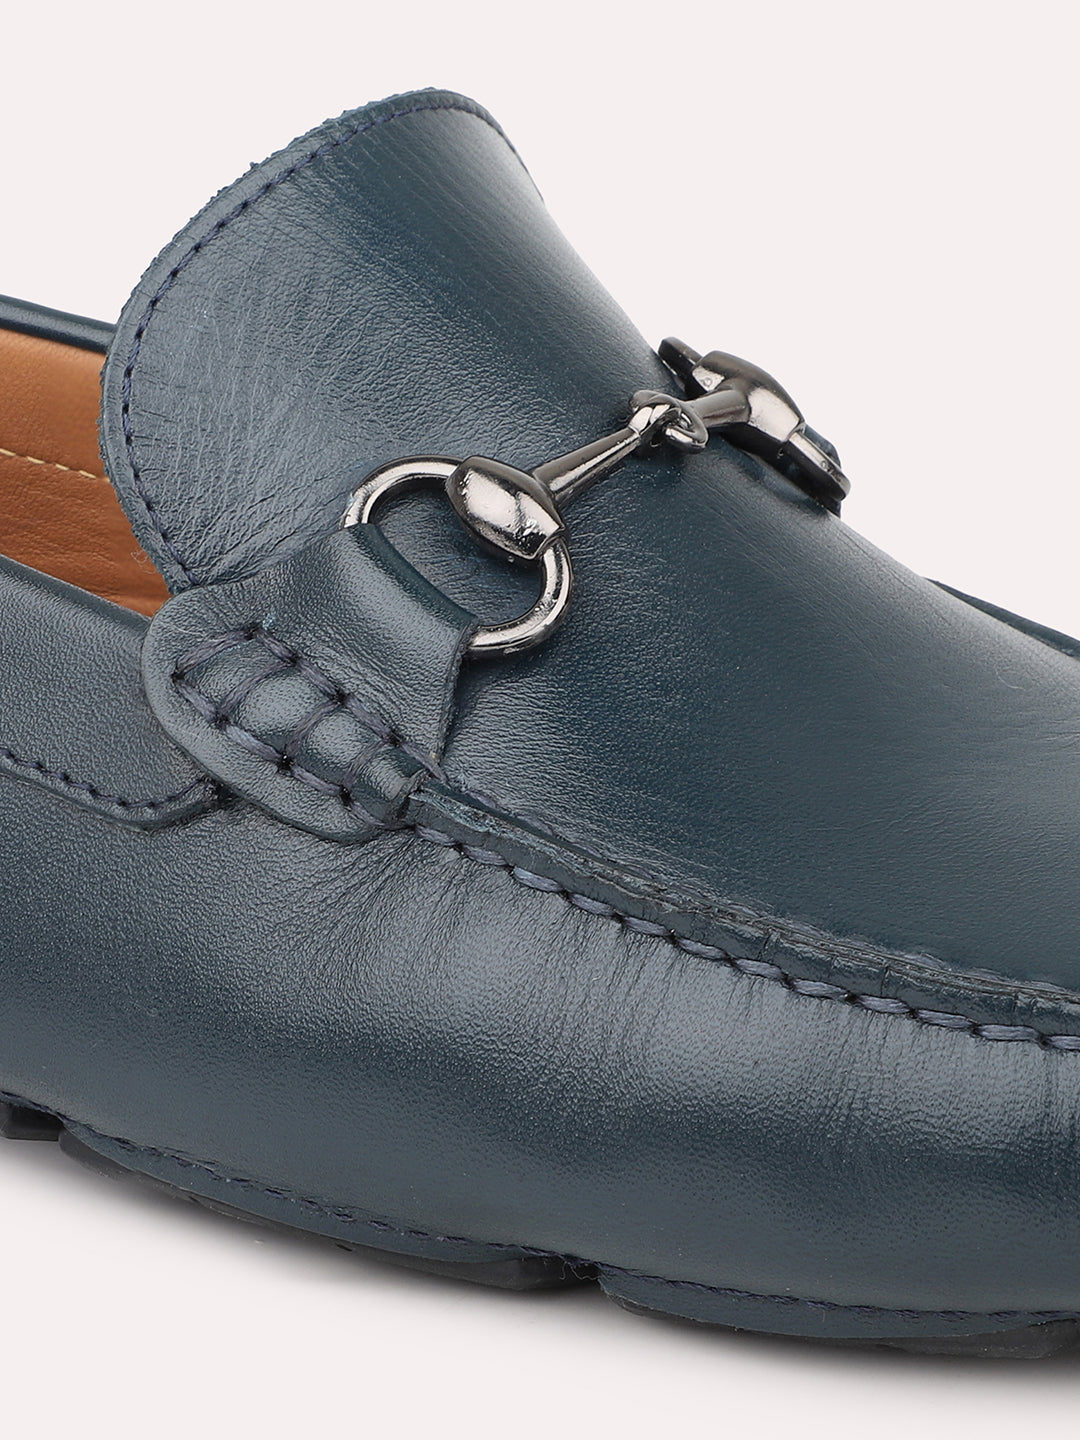 Atesber Blue Loafer Driving Shoes For Men